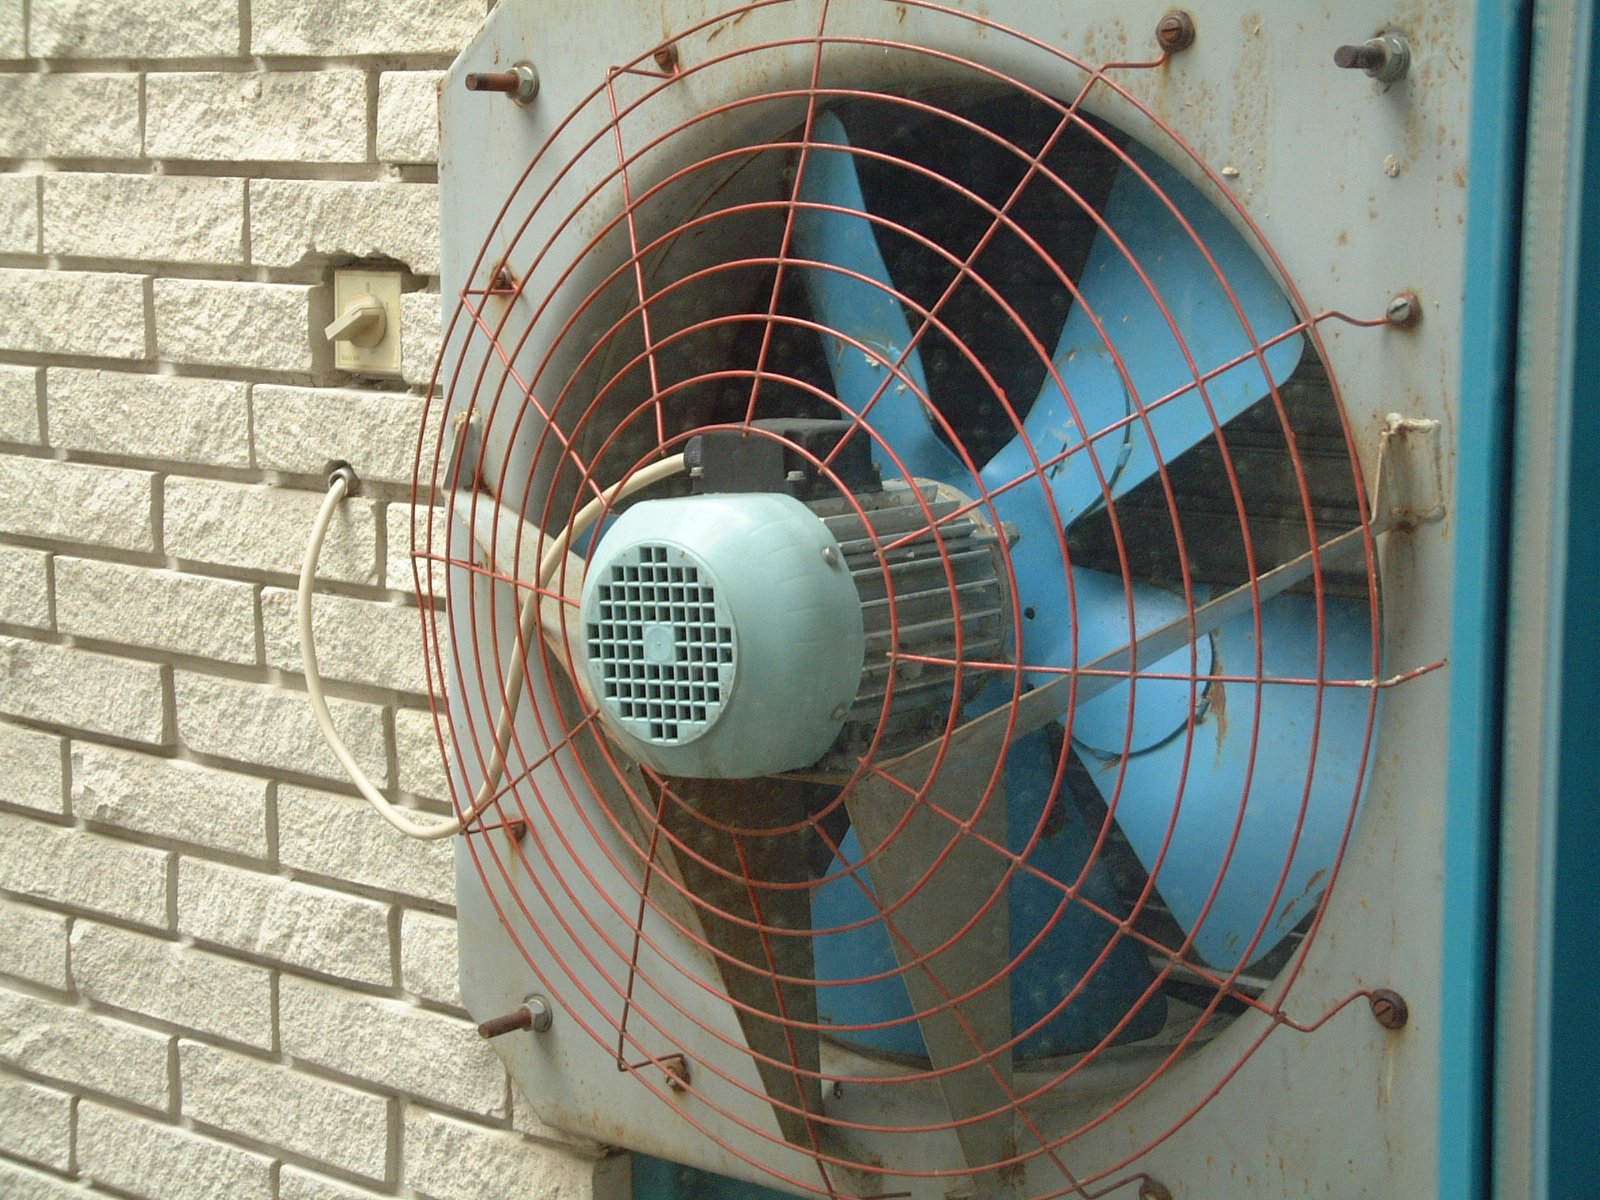 a blow dryer fan on the side of a wall